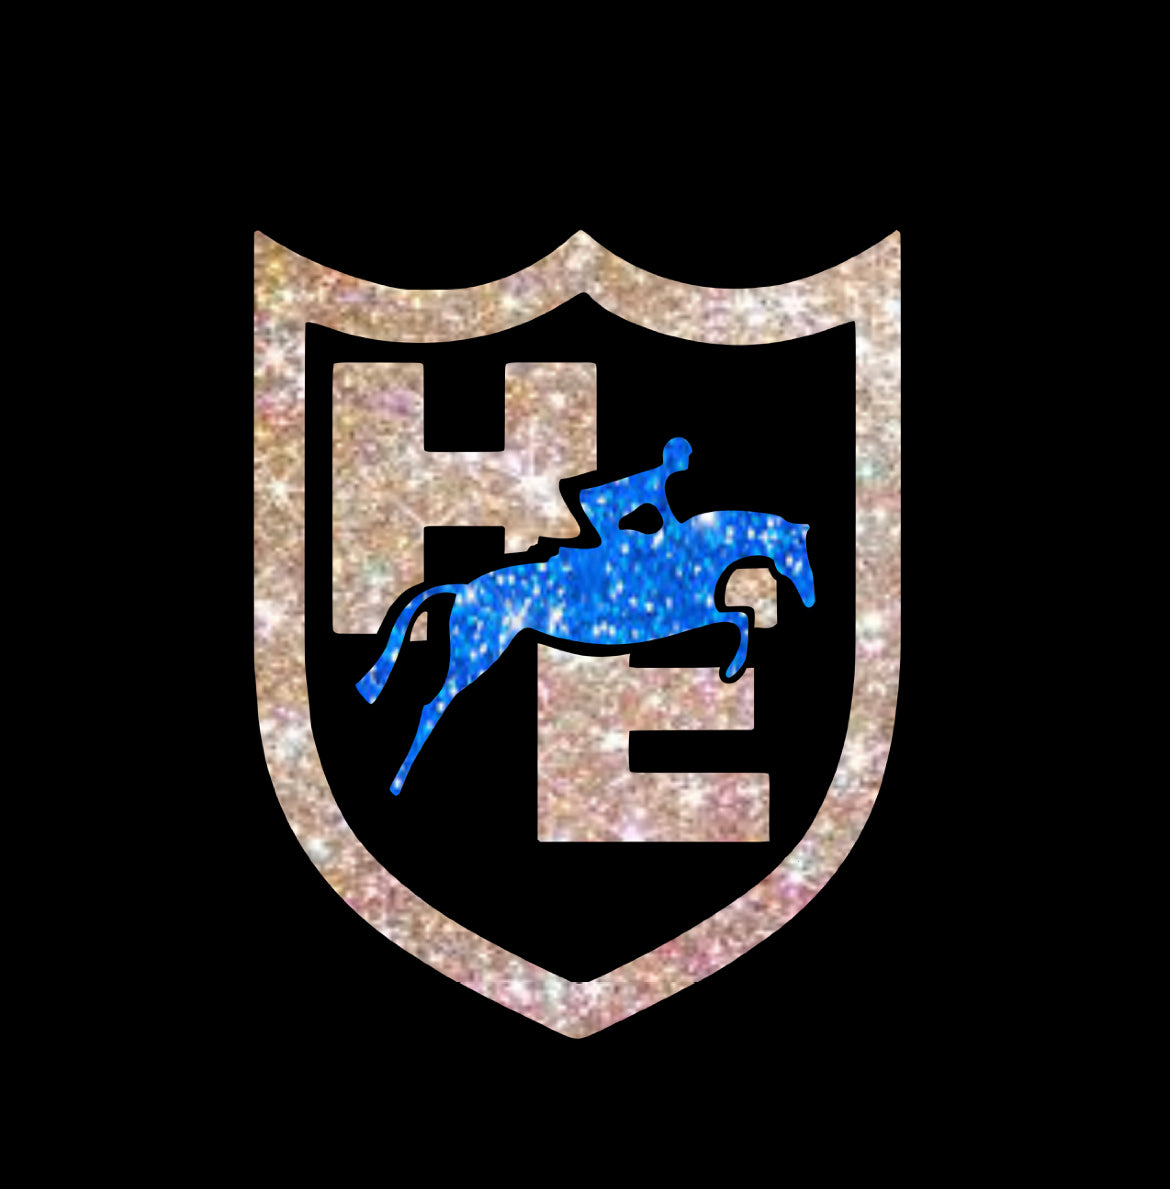 HE Logo